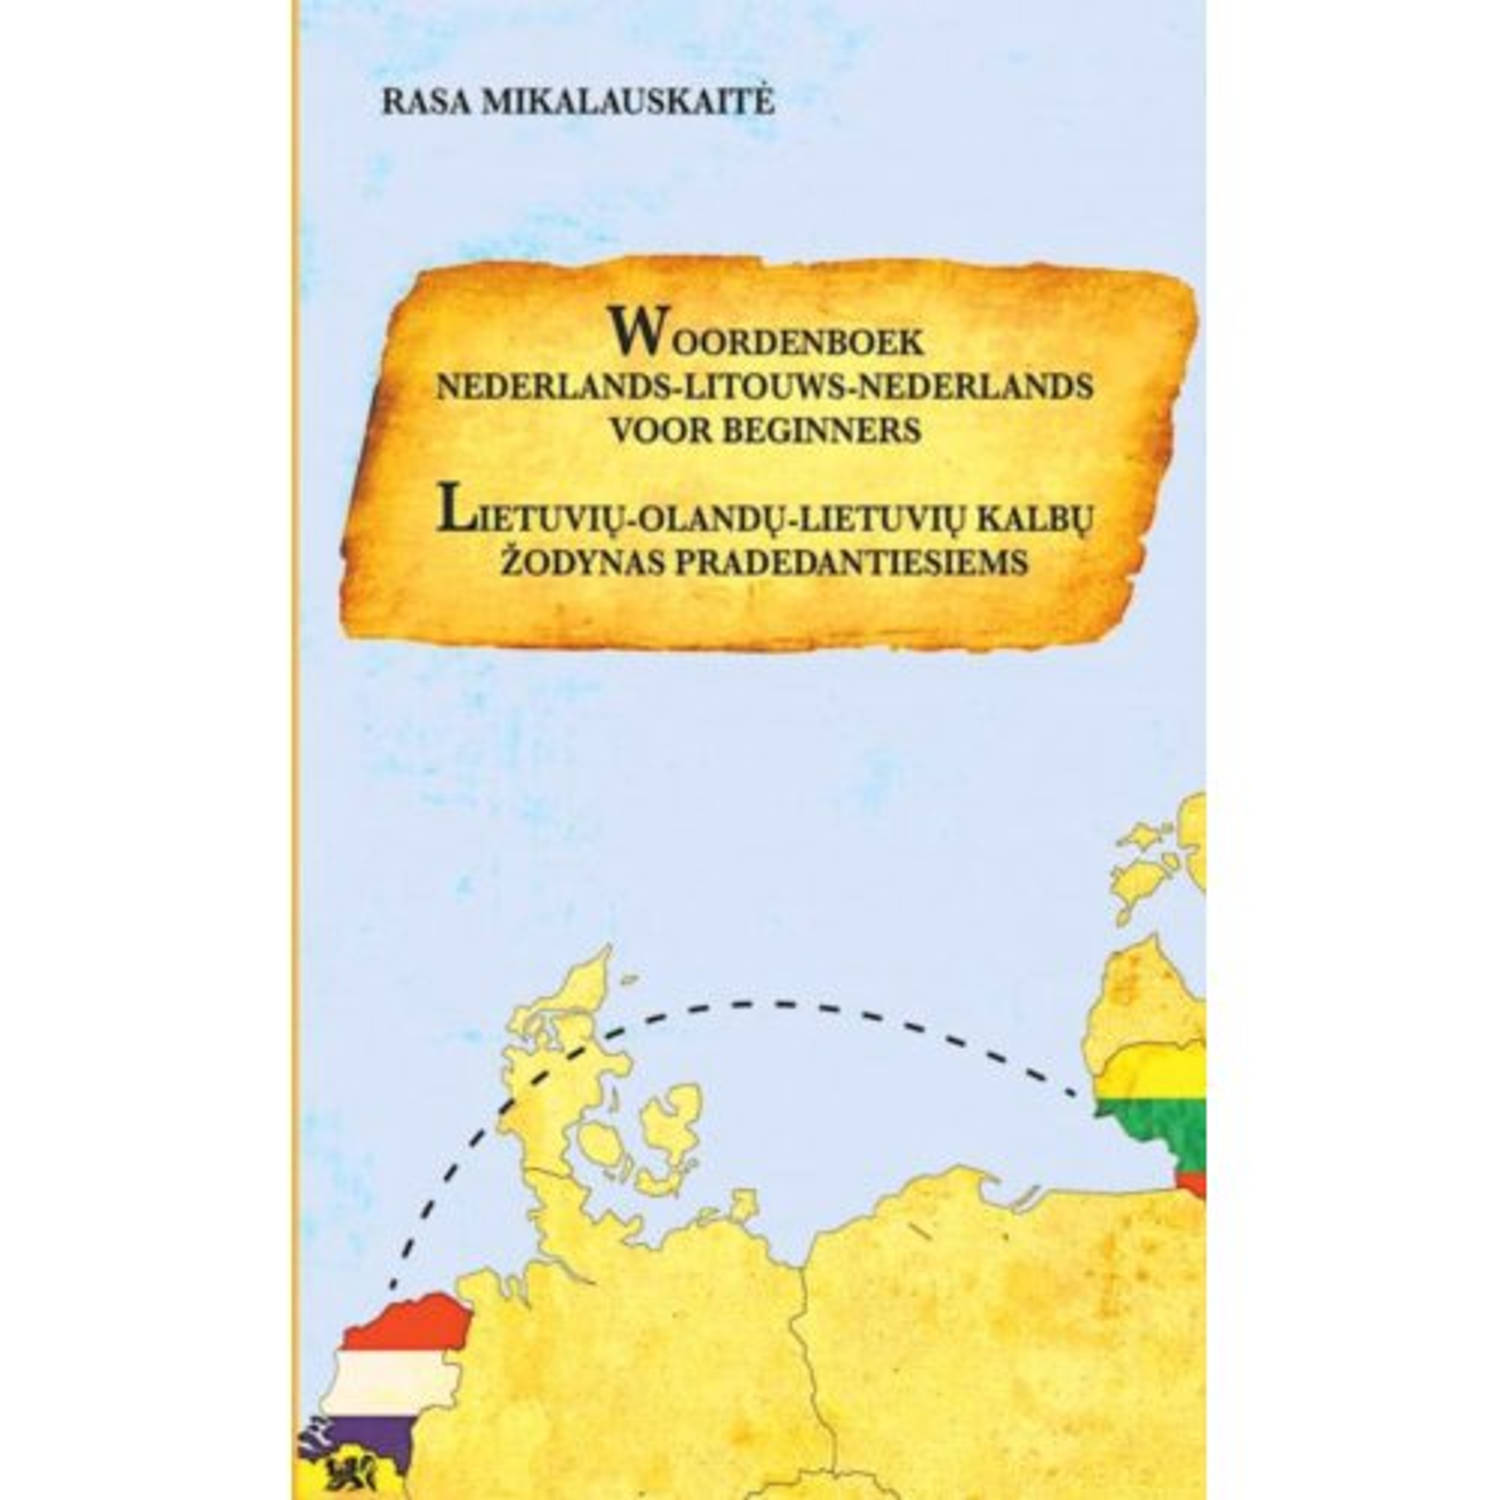 Woordenboek Litouws-nederlands-litouws